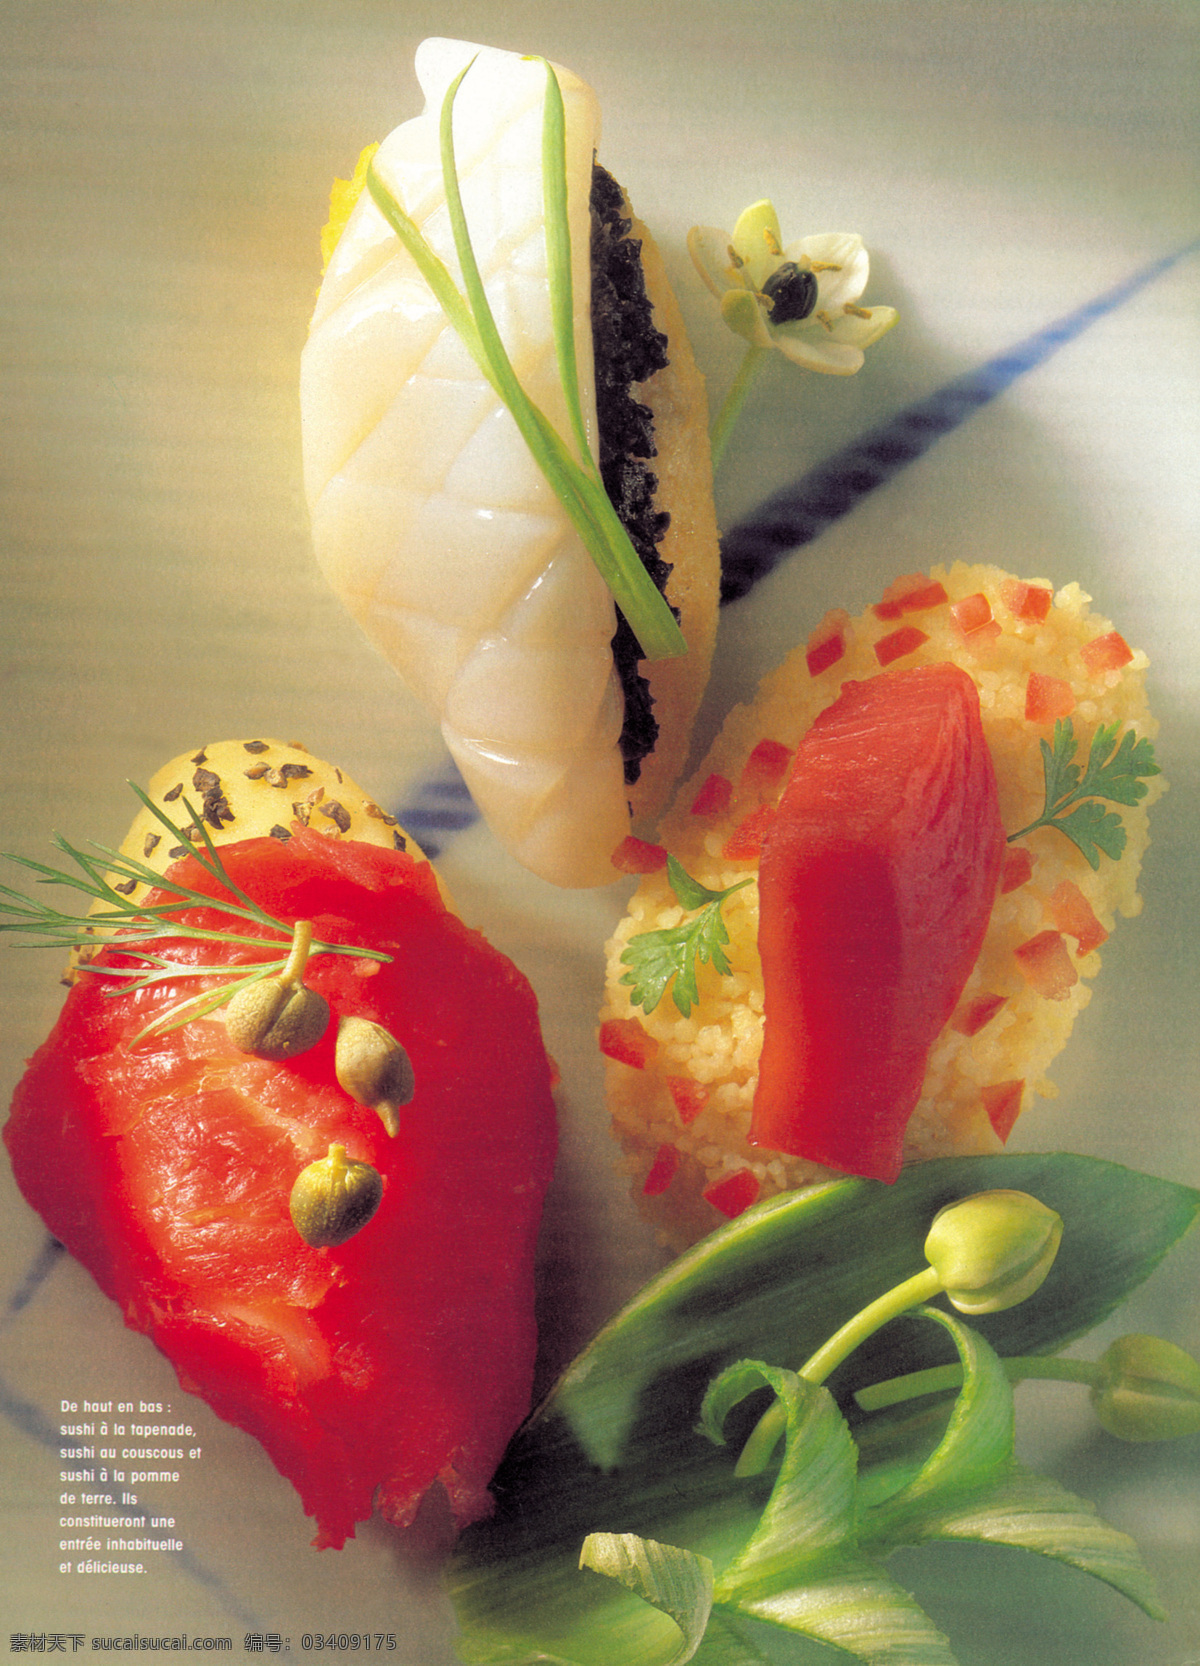 食品 美食 广告 版式设计 餐饮美食图片 美食广告设计 设计图 生活百科 食品广告设计 风景 生活 旅游餐饮